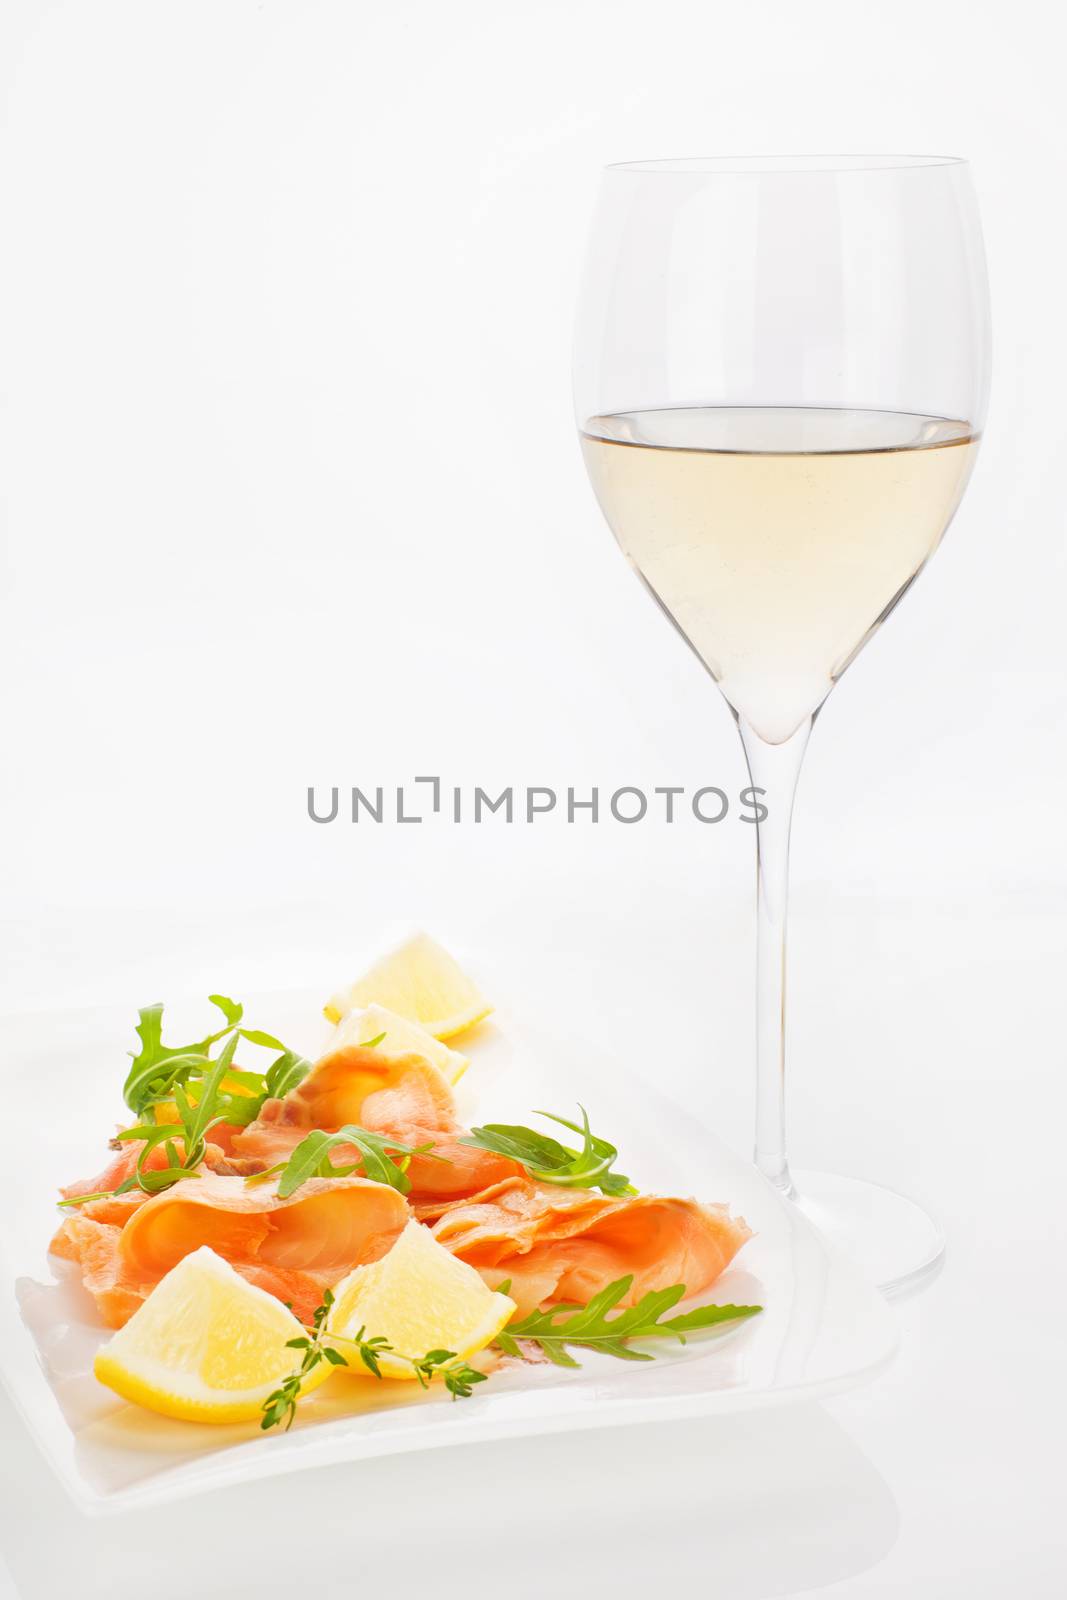 Raw salmon with white wine. by eskymaks